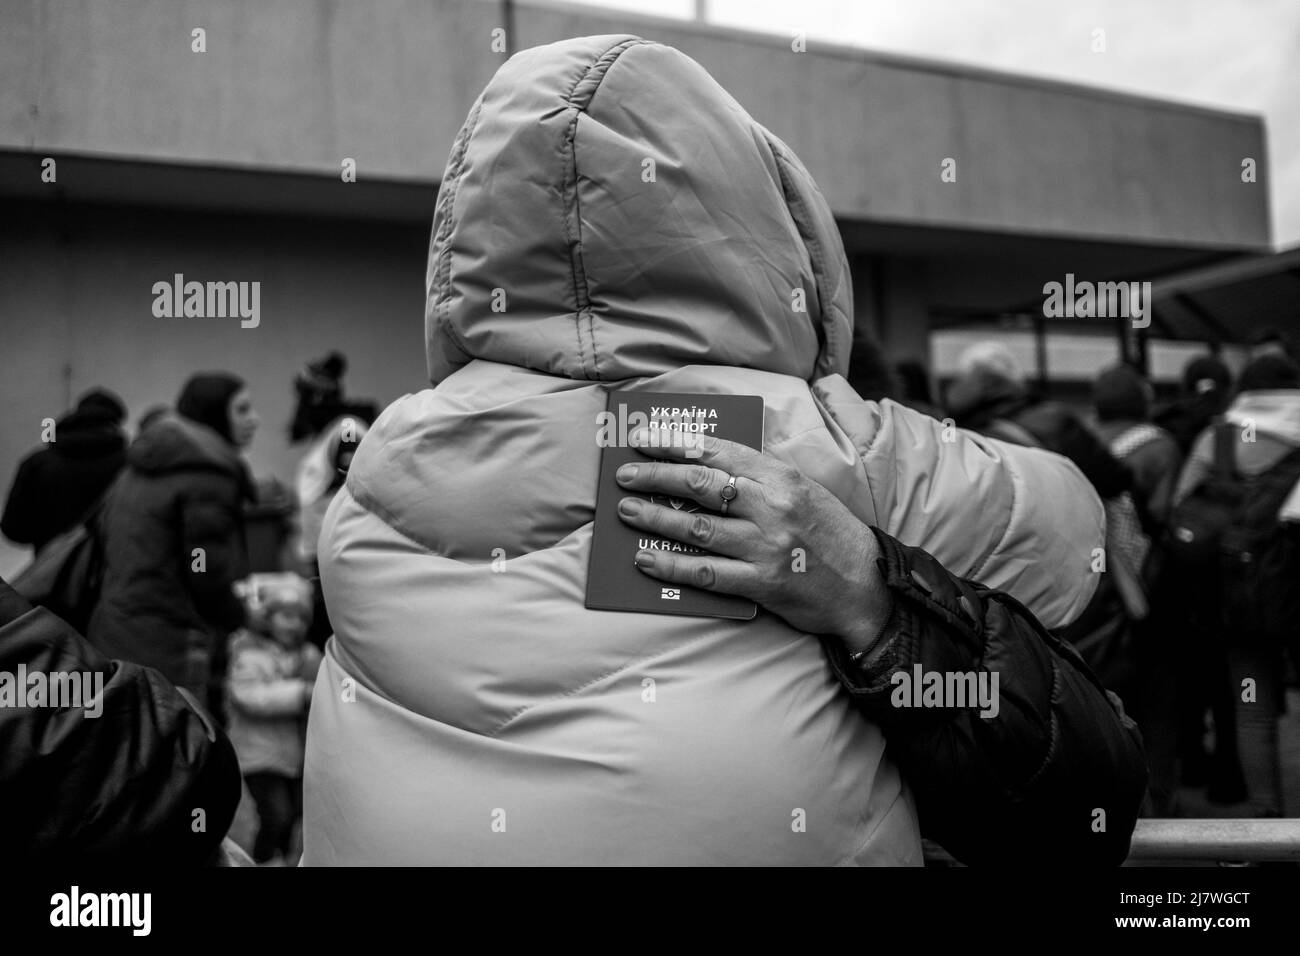 Michael Bunel / Le Pictorium - Refugiados en la frontera polaco-ucraniana después de la invasión de Ucrania por el ejército ruso - 5/3/2022 - - dos Foto de stock